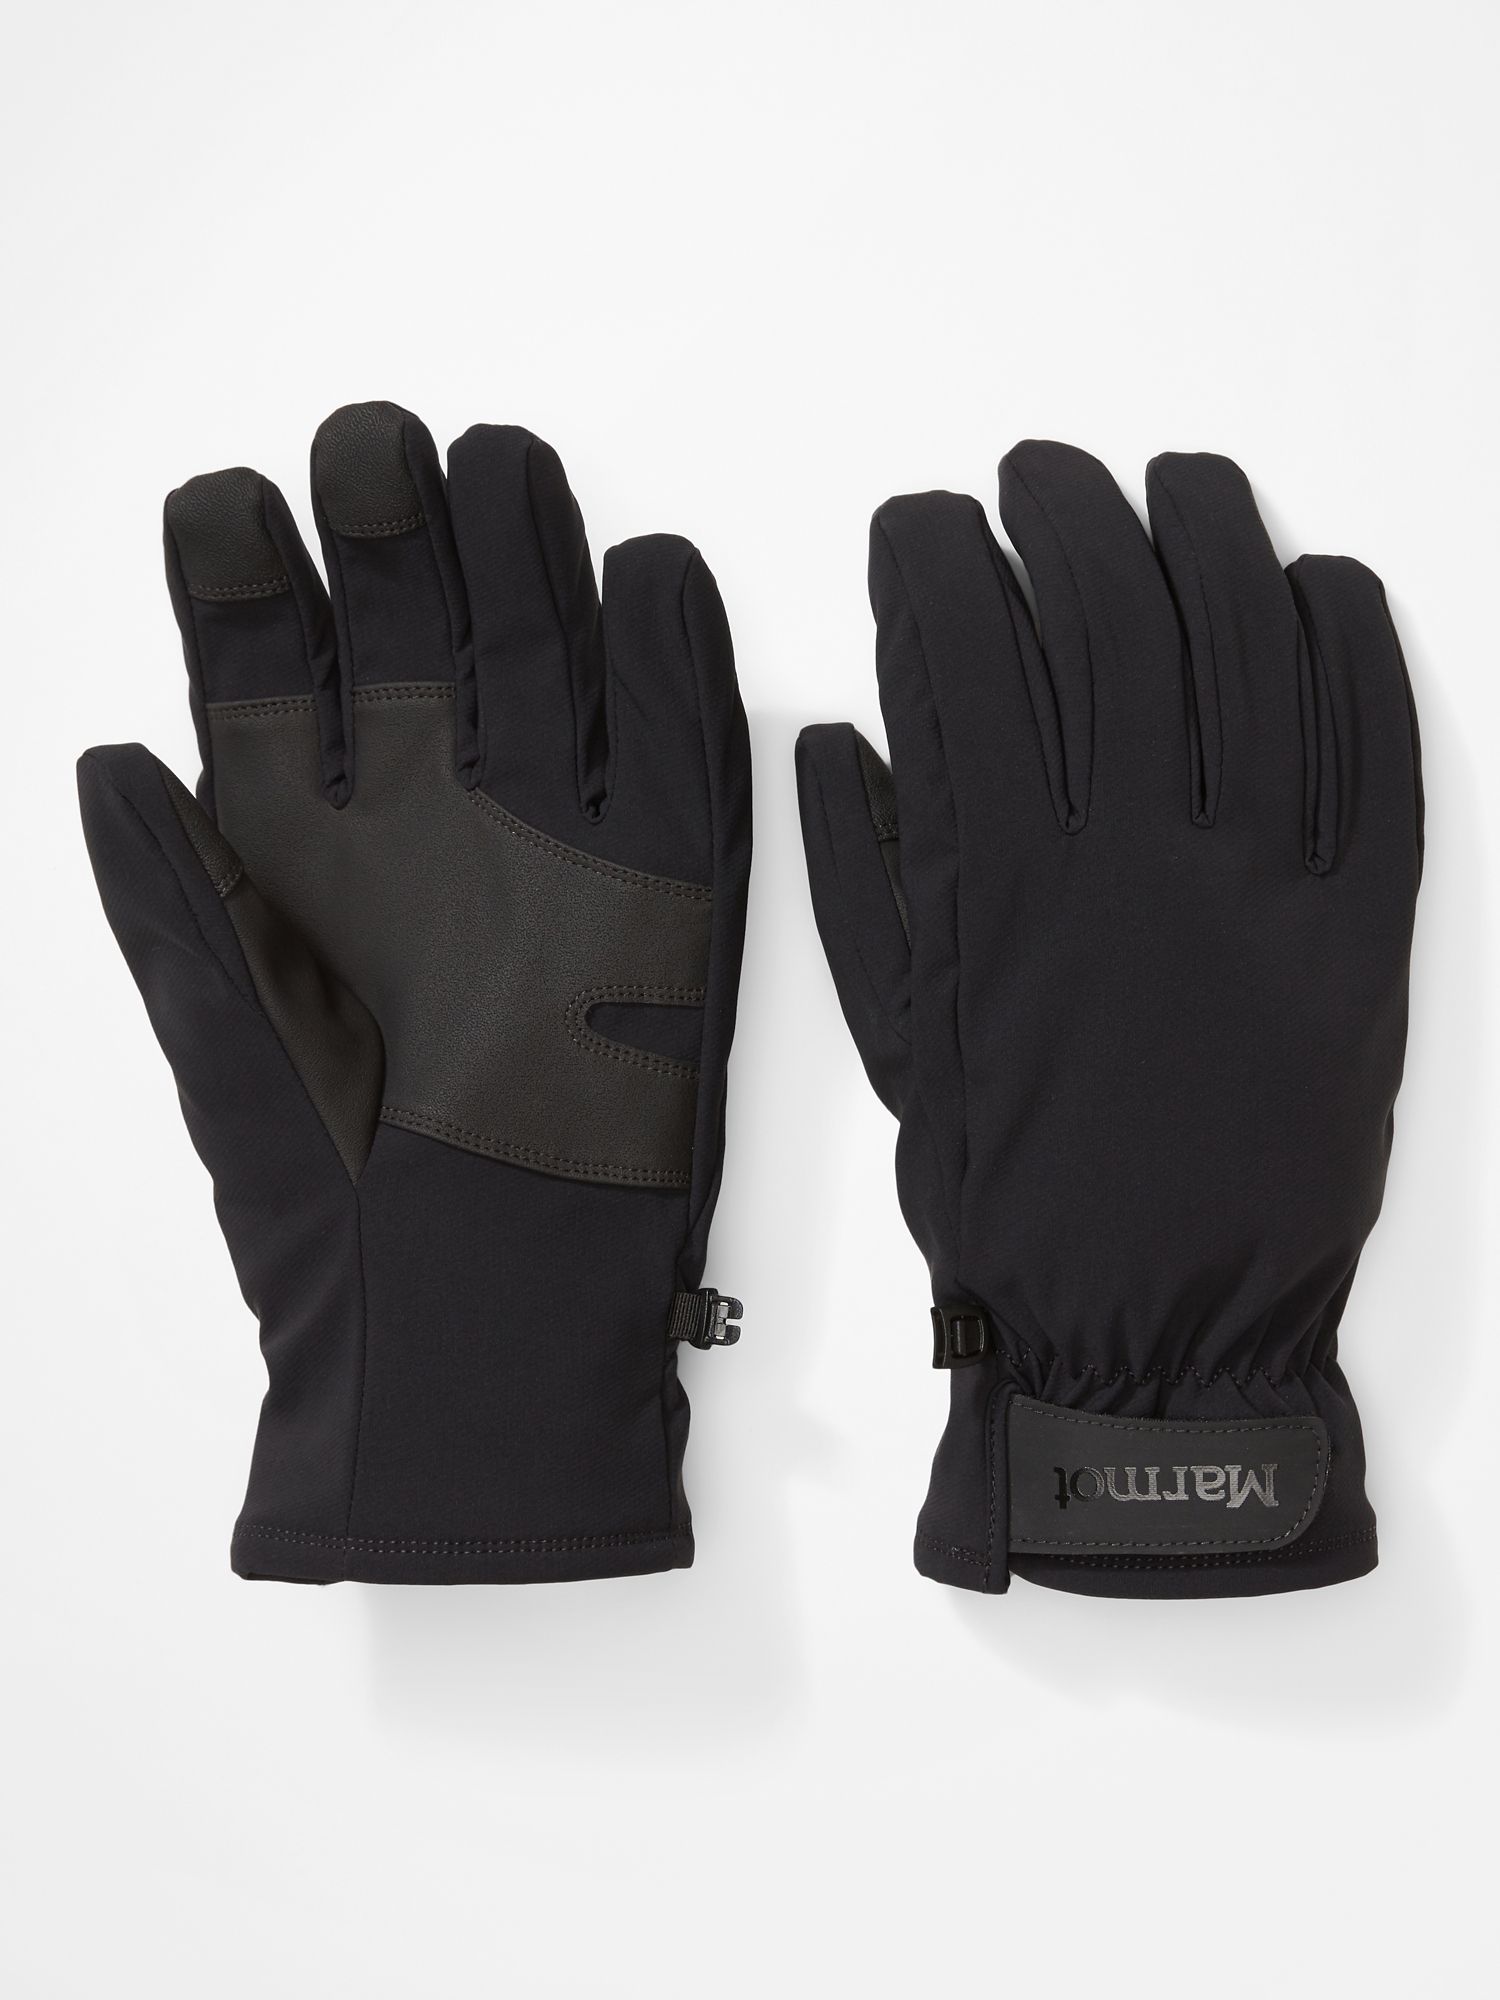 Men's Slydda Softshell Gloves